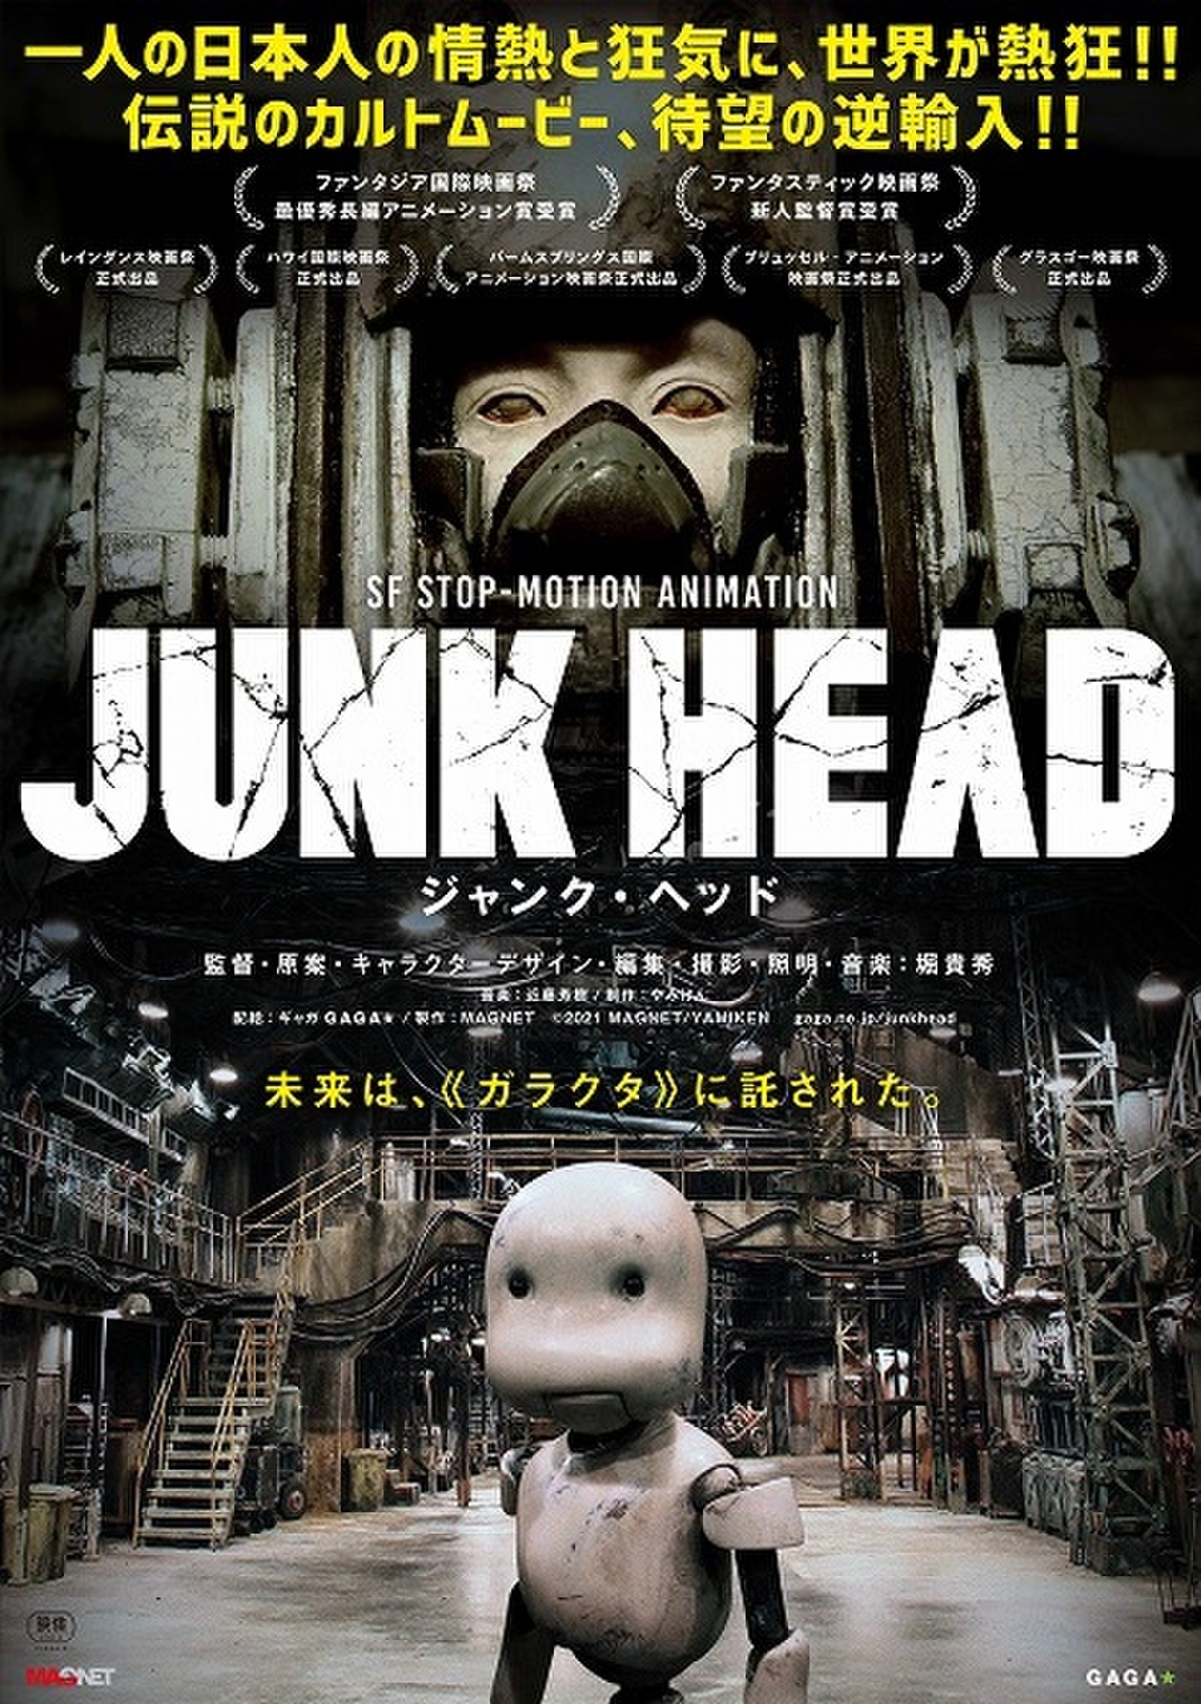 たったひとりで製作7年 デル トロ絶賛 日本人監督が独学で完成させたディストピアsfアニメ Junk Head 3月26日公開 映画ニュース 映画 Com